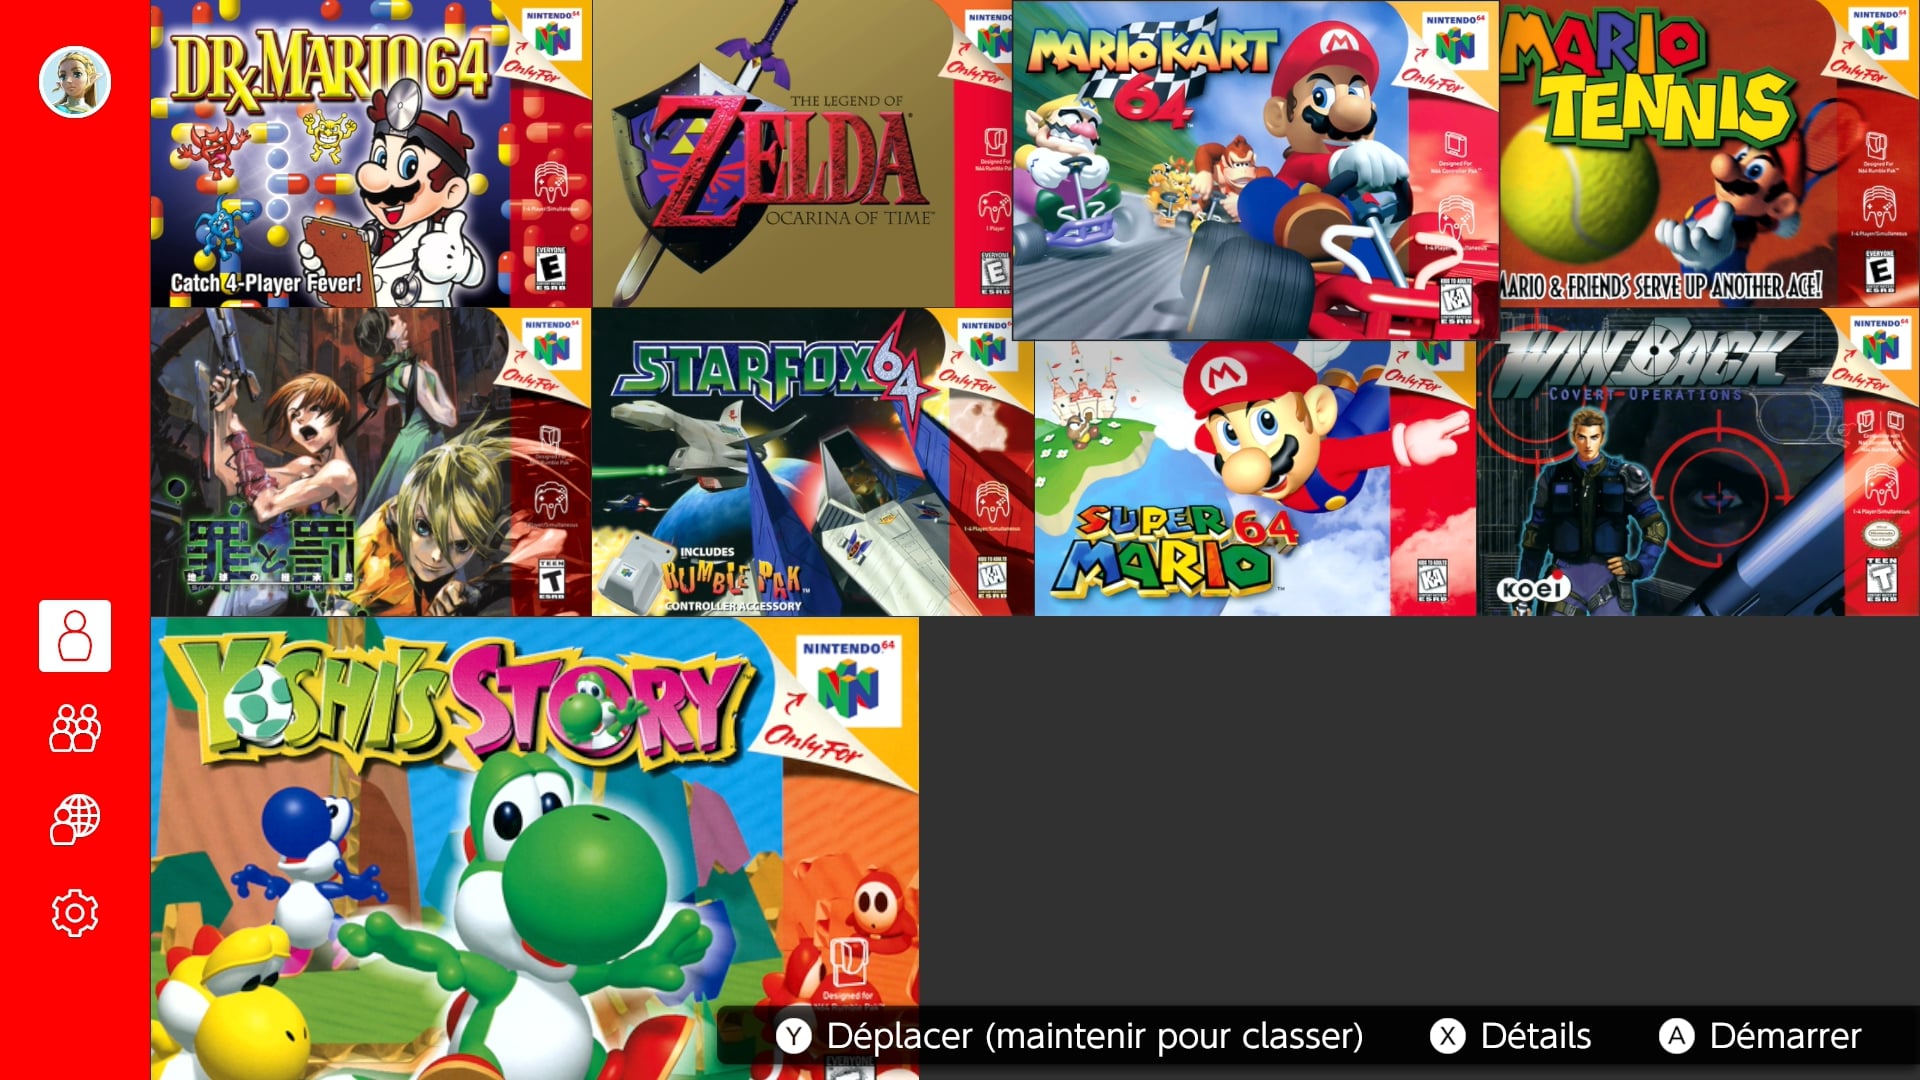 Comment passer les jeux Nintendo 64 du Nintendo Switch Online en Français